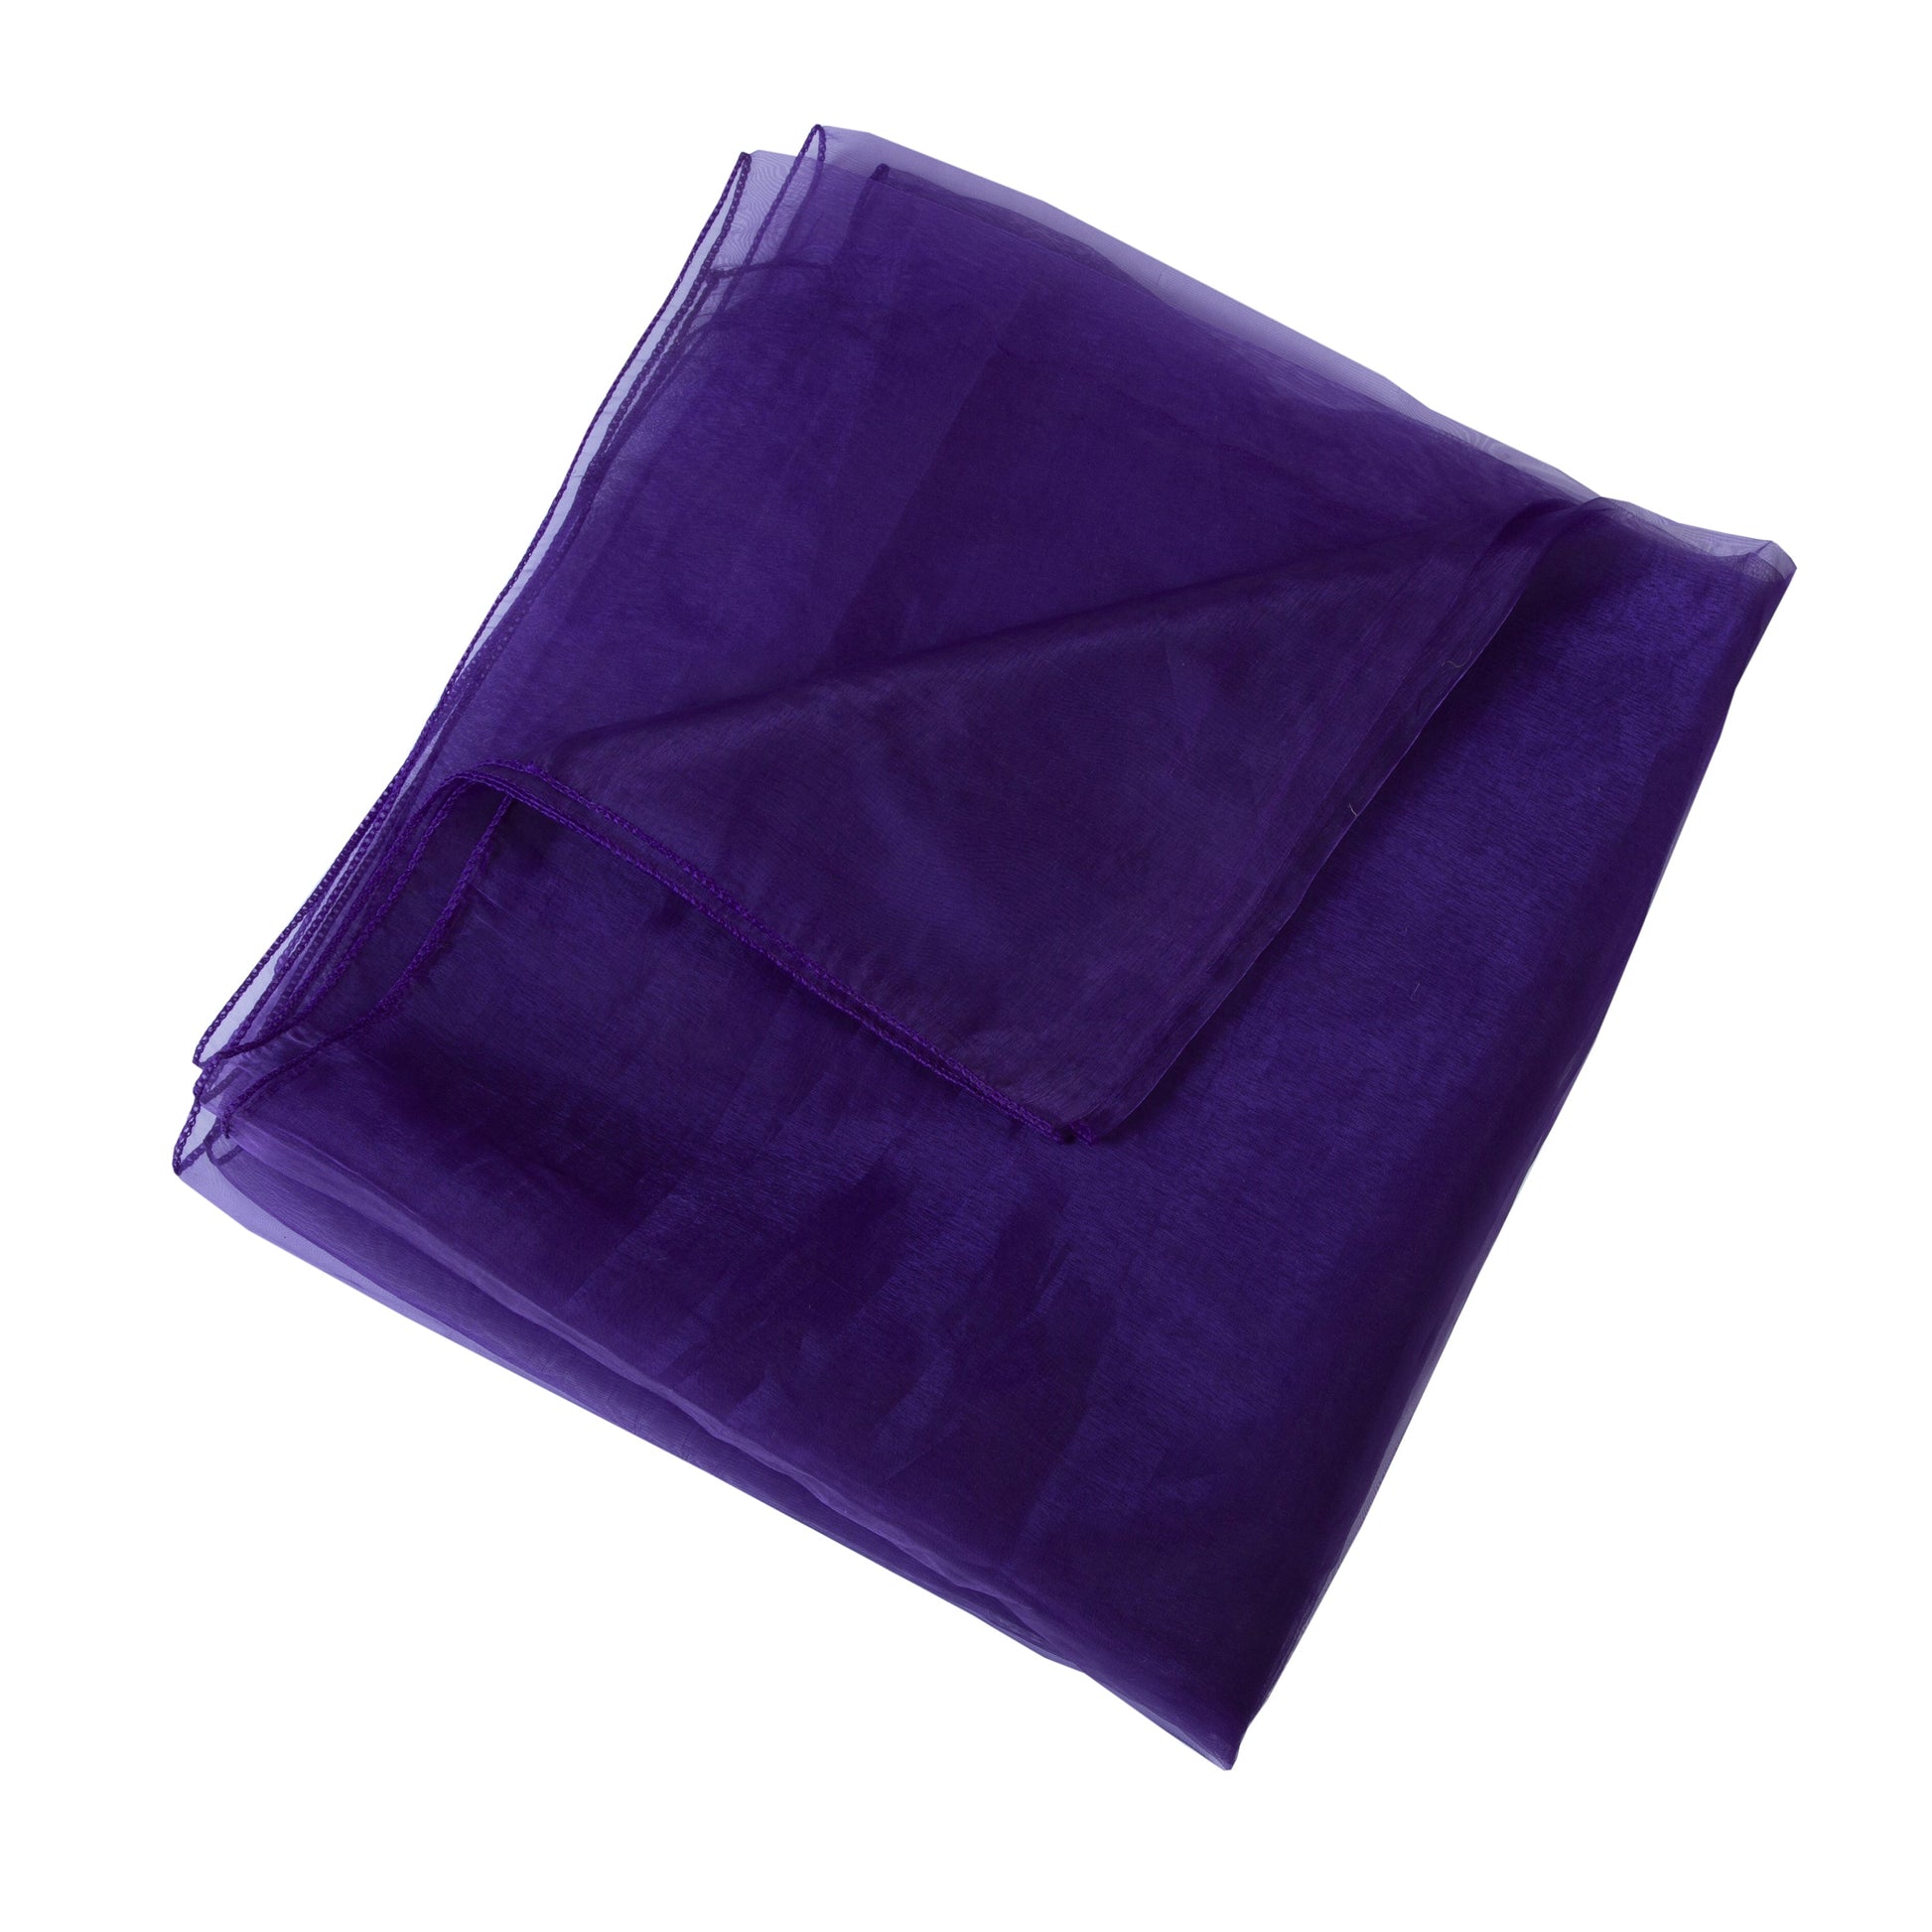 Cadbury Purple,156ad98d-7474-4793-b00f-856b55a7c3f9